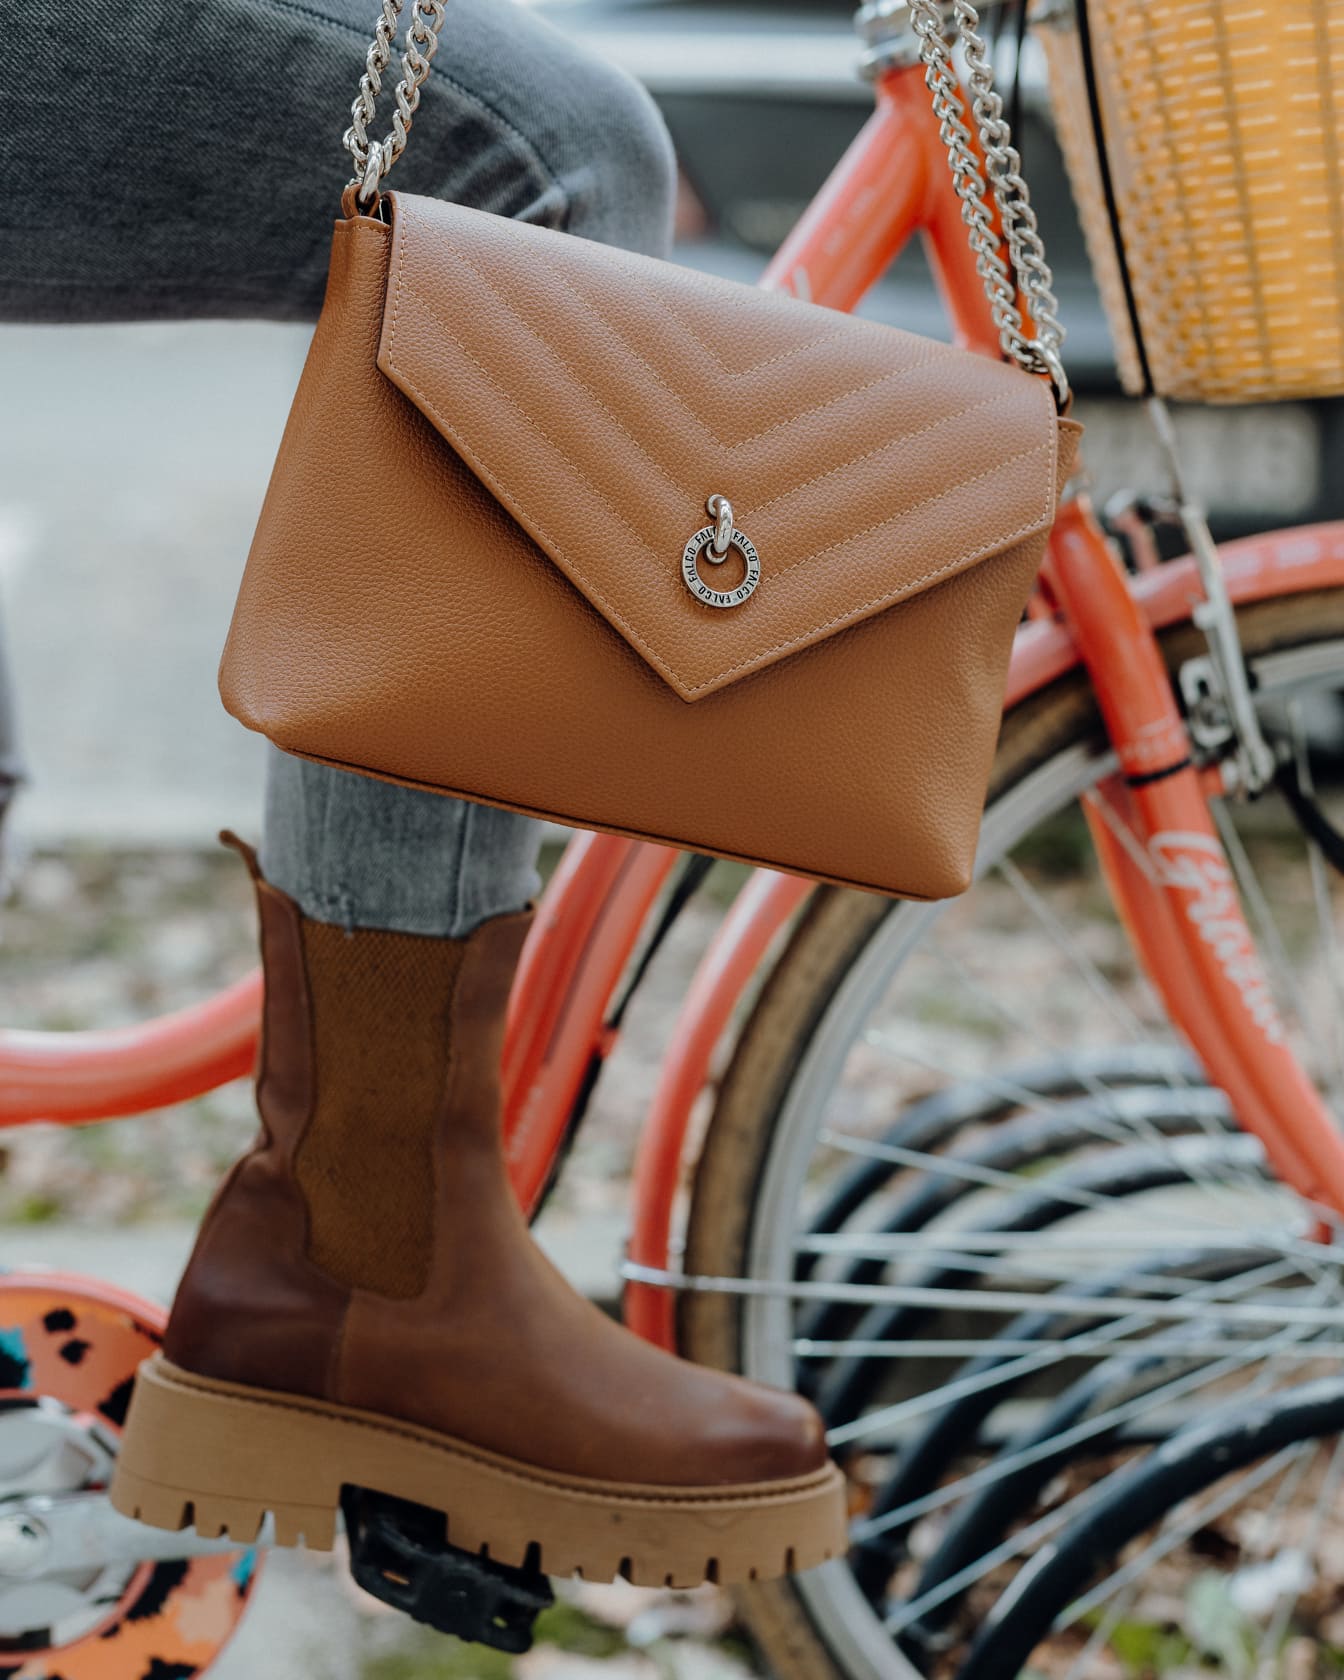 Close-up van het been van een persoon zittend op een fiets die bruine laarzen draagt en een bruine portemonnee vasthoudt